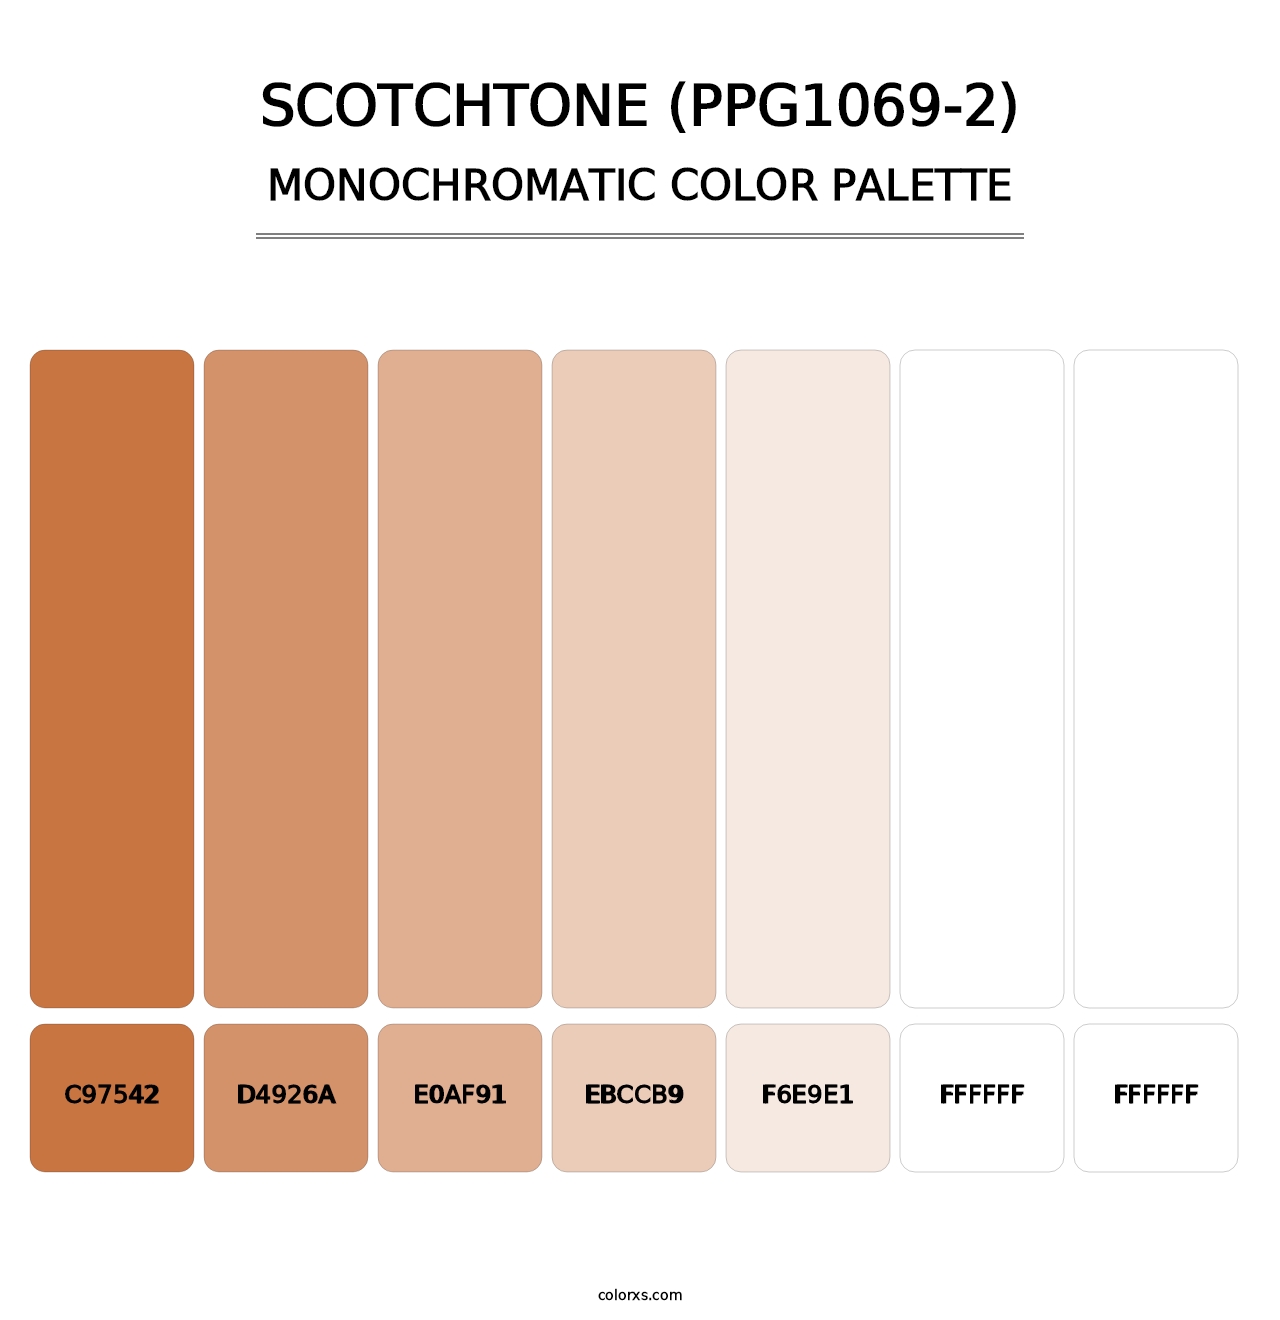 Scotchtone (PPG1069-2) - Monochromatic Color Palette